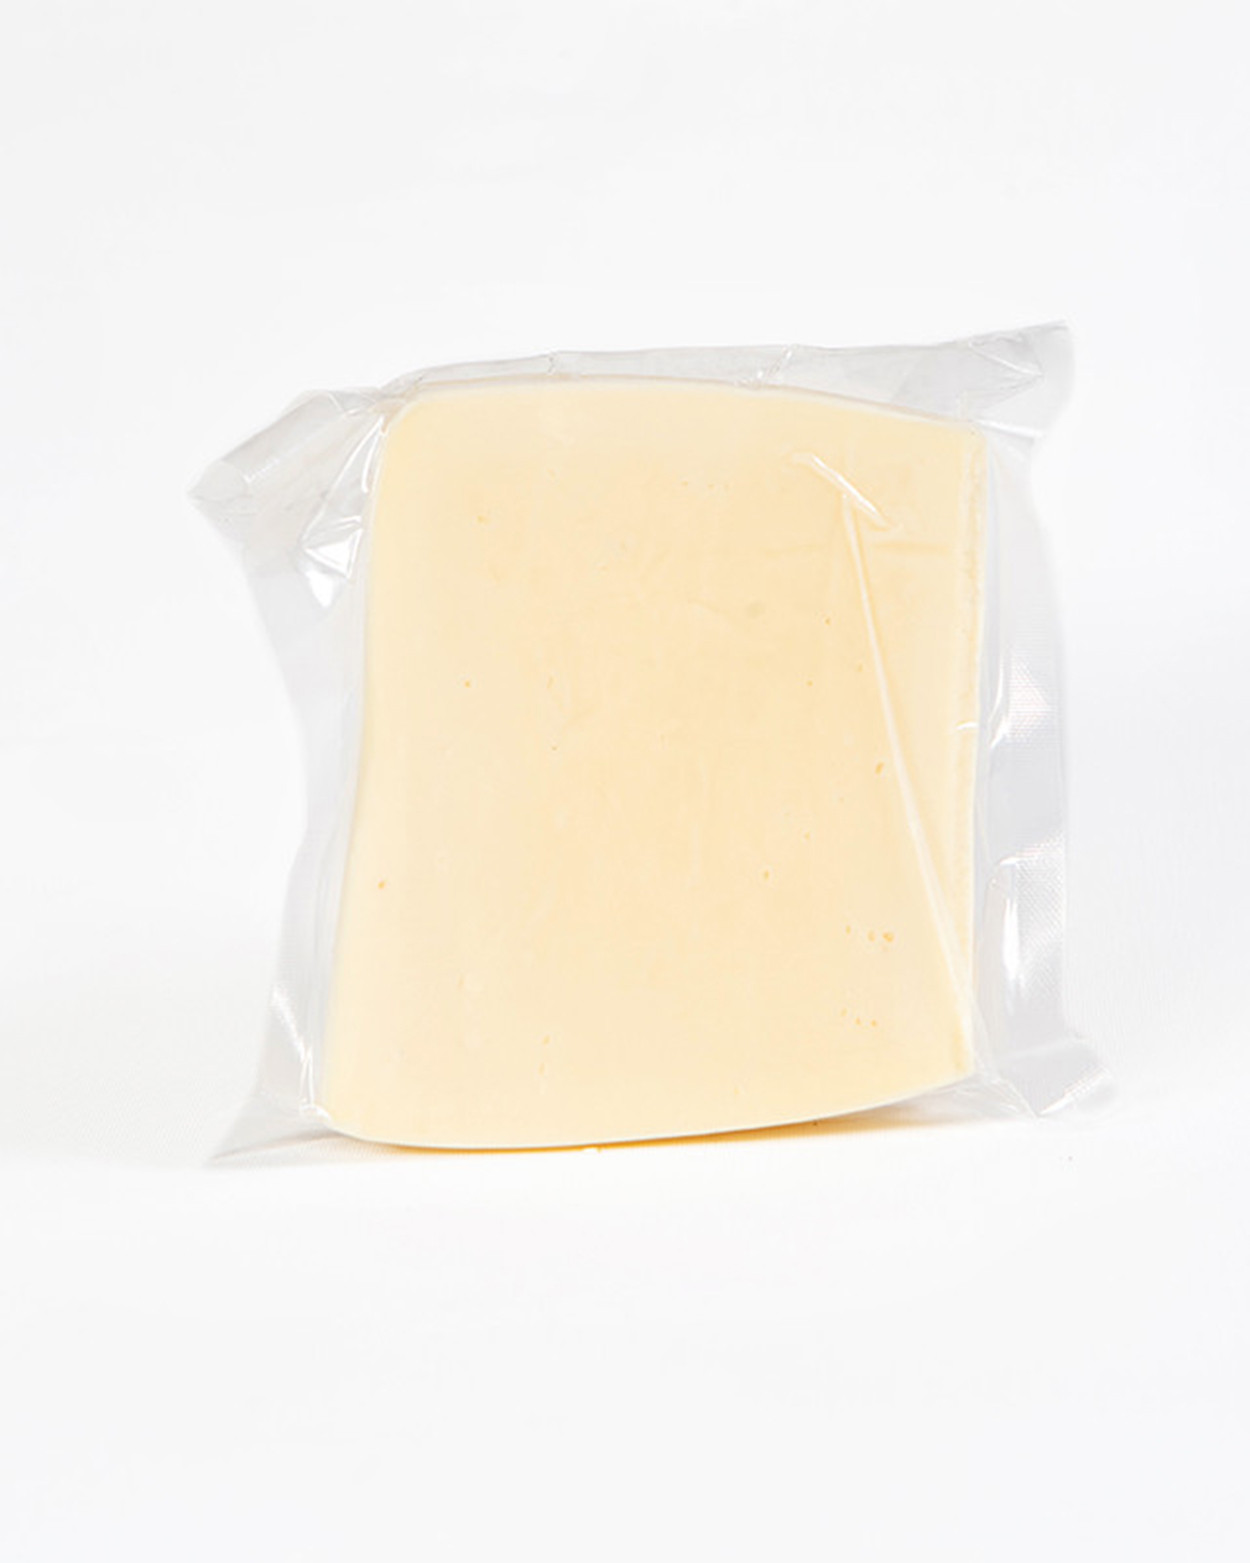 Mihaliç Kelle Peyniri 450 GR